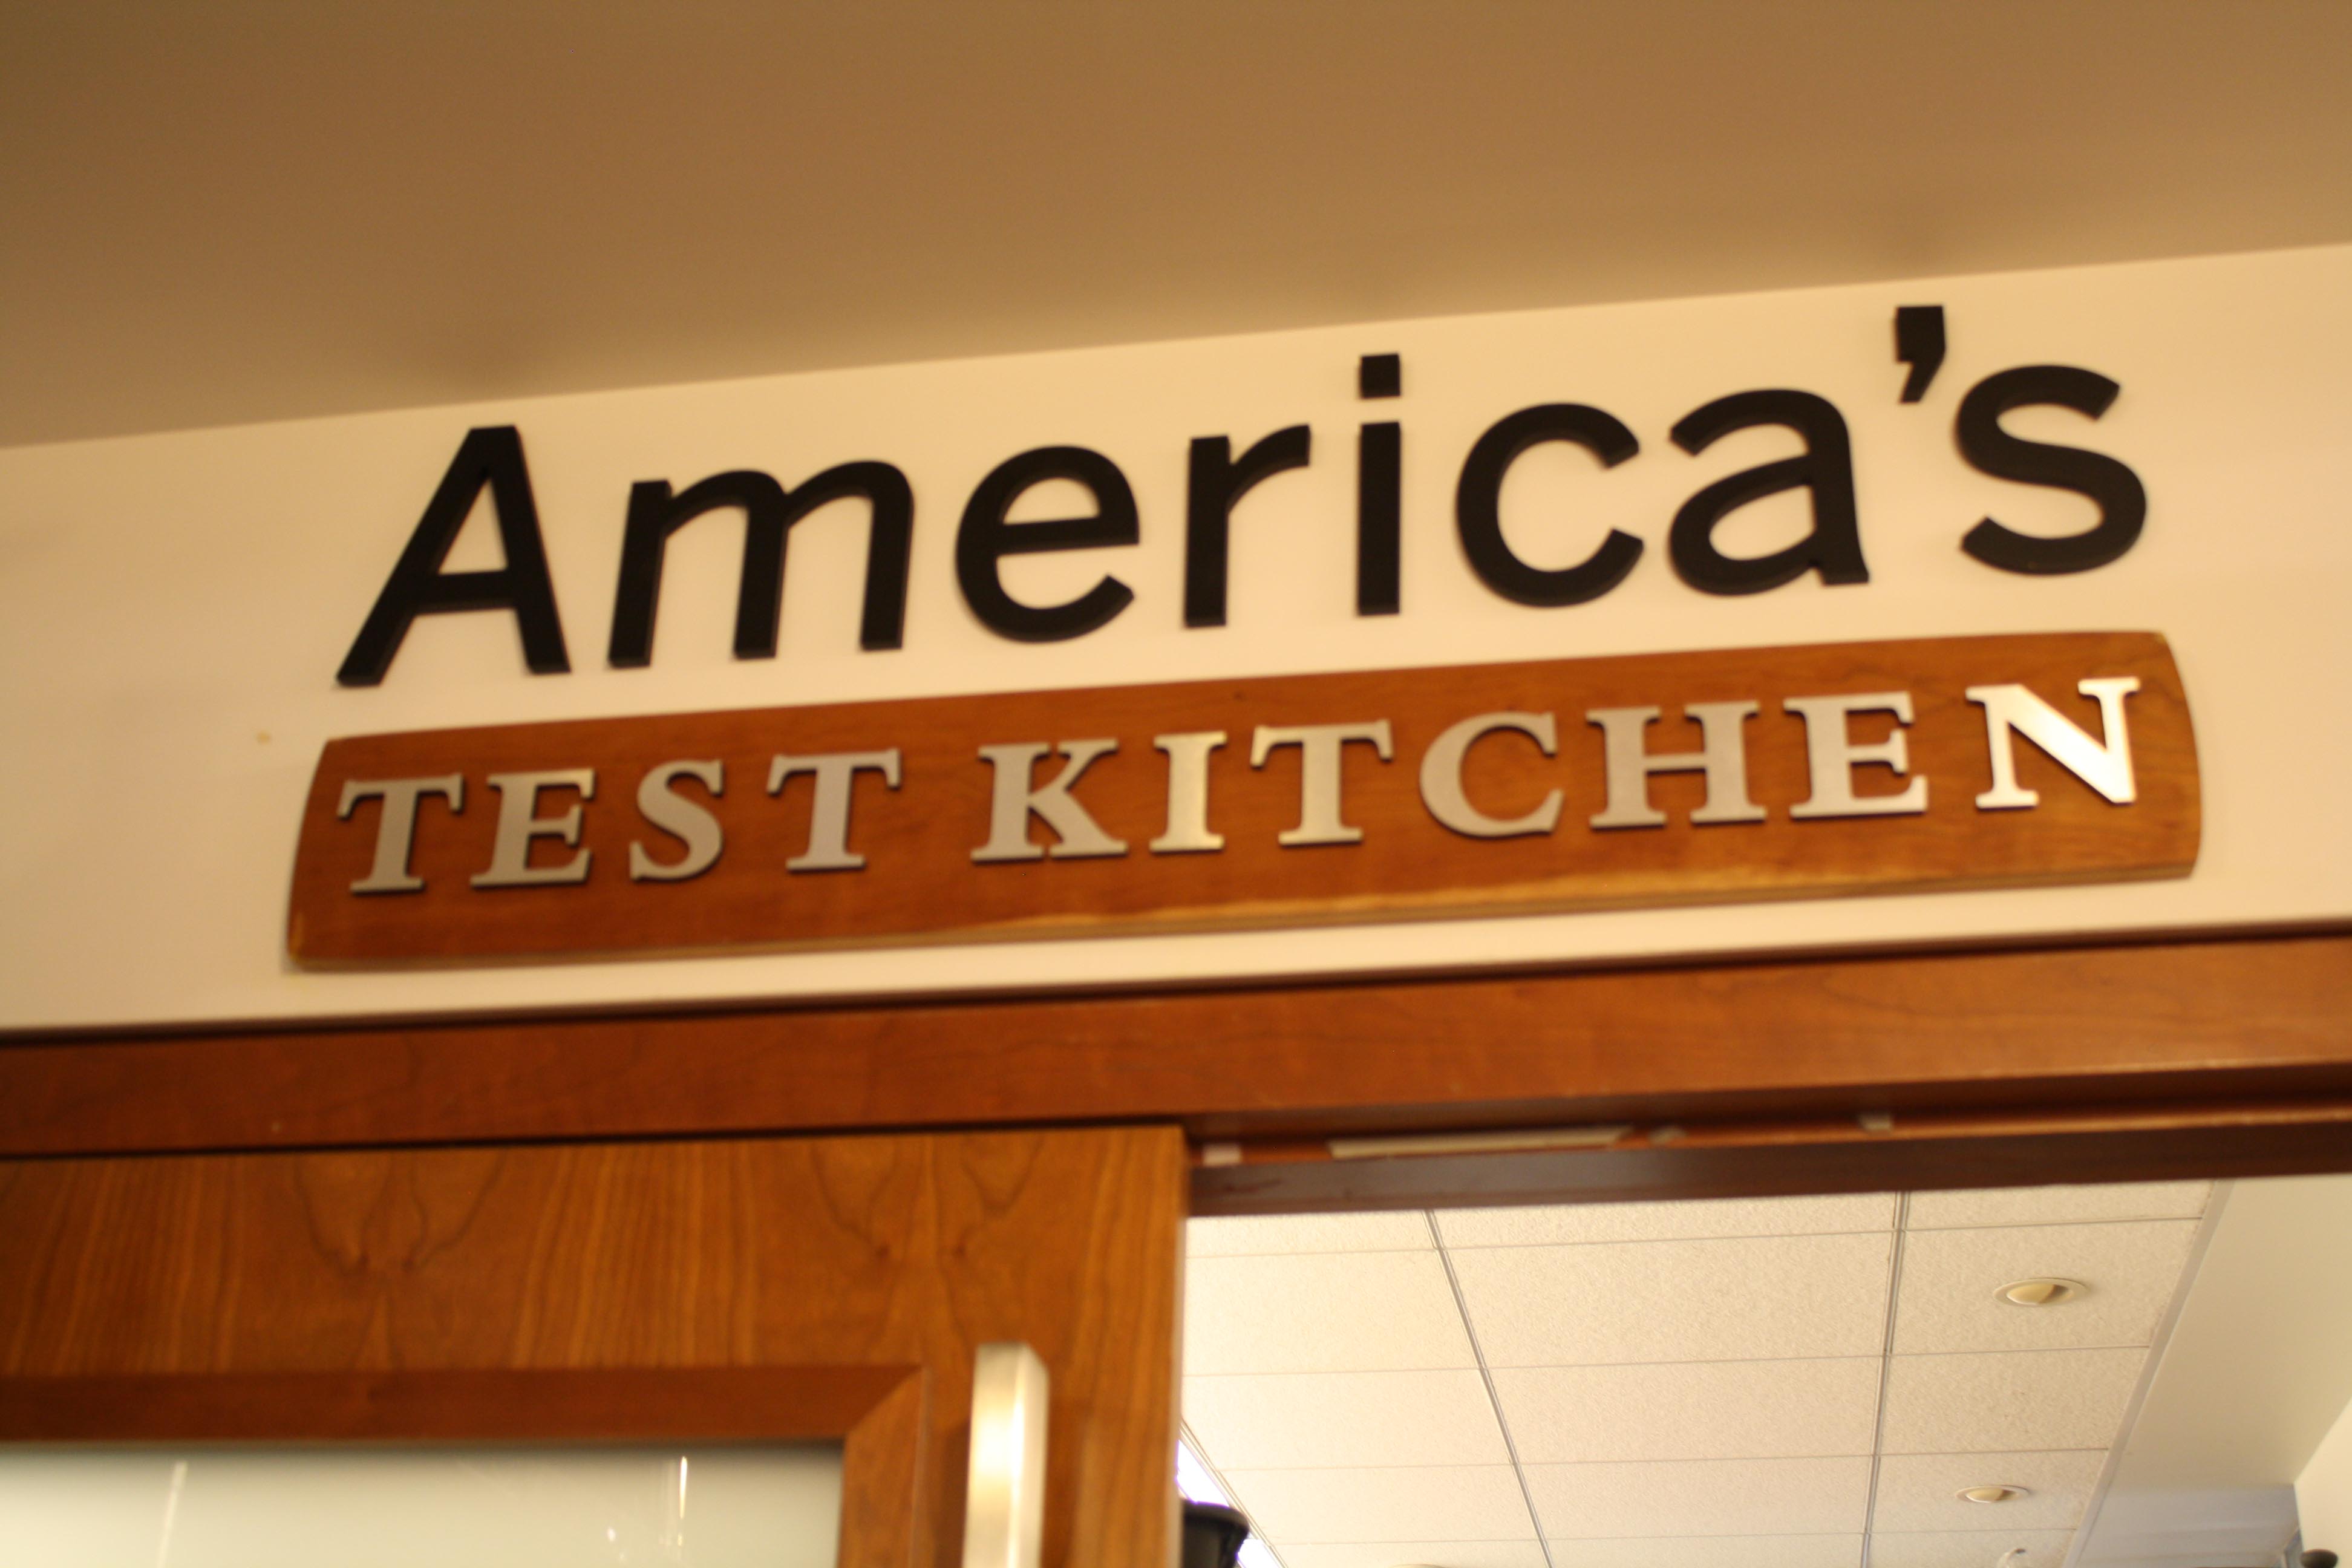 When in Boston- America's Test Kitchen